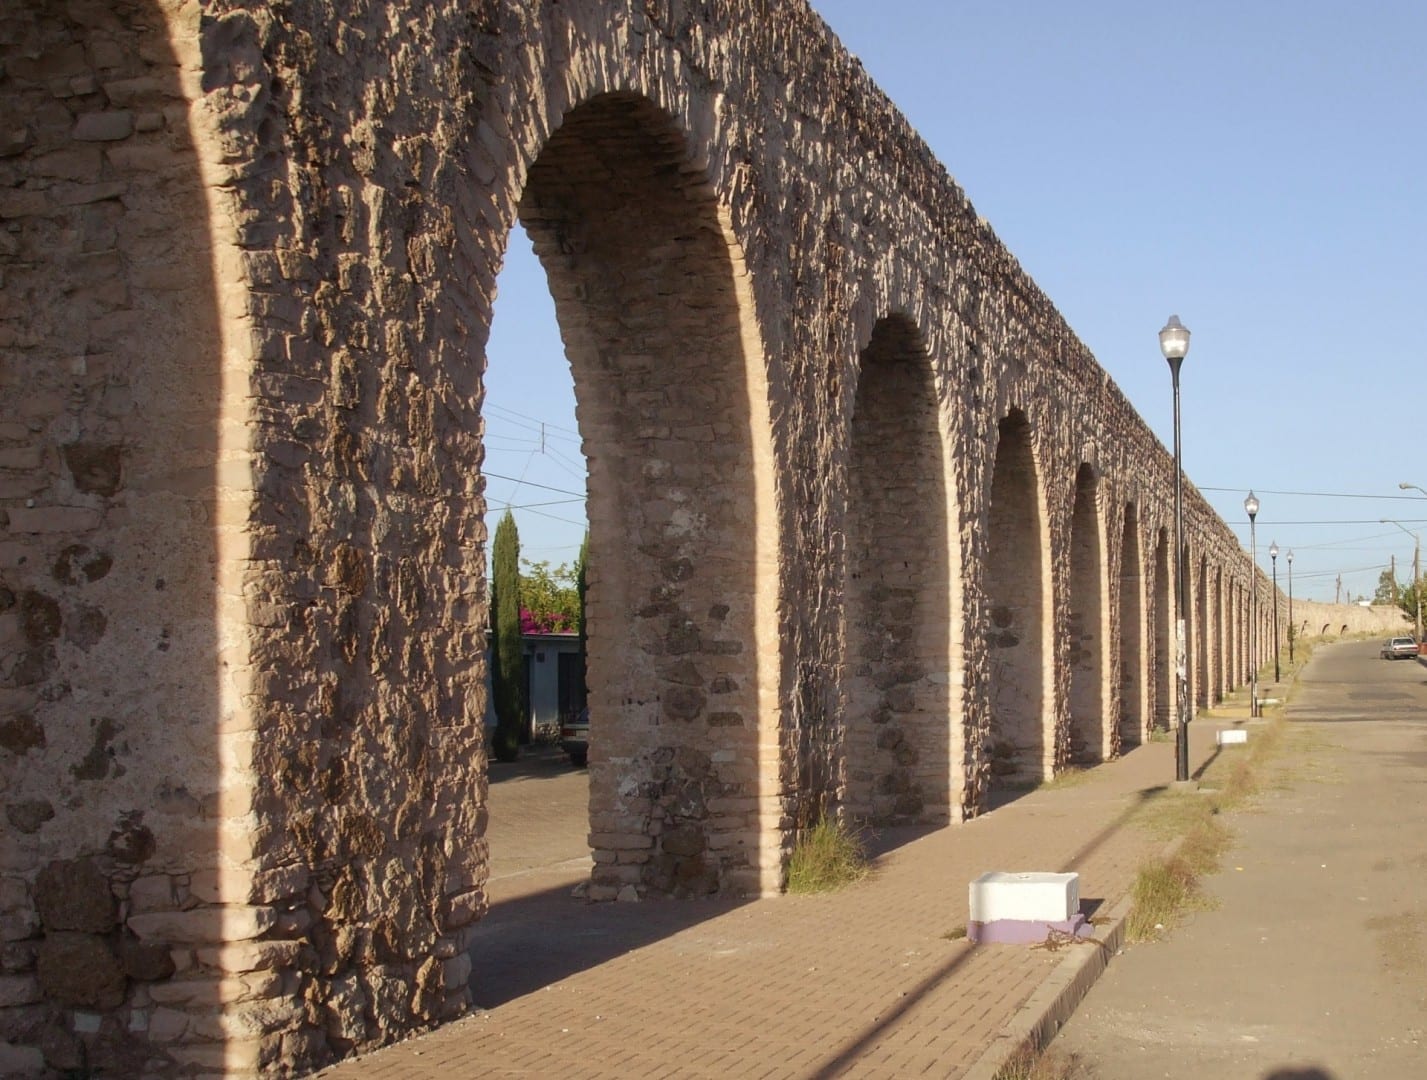 Parte del sistema de acueductos coloniales en Chihuahua. Chihuahua México